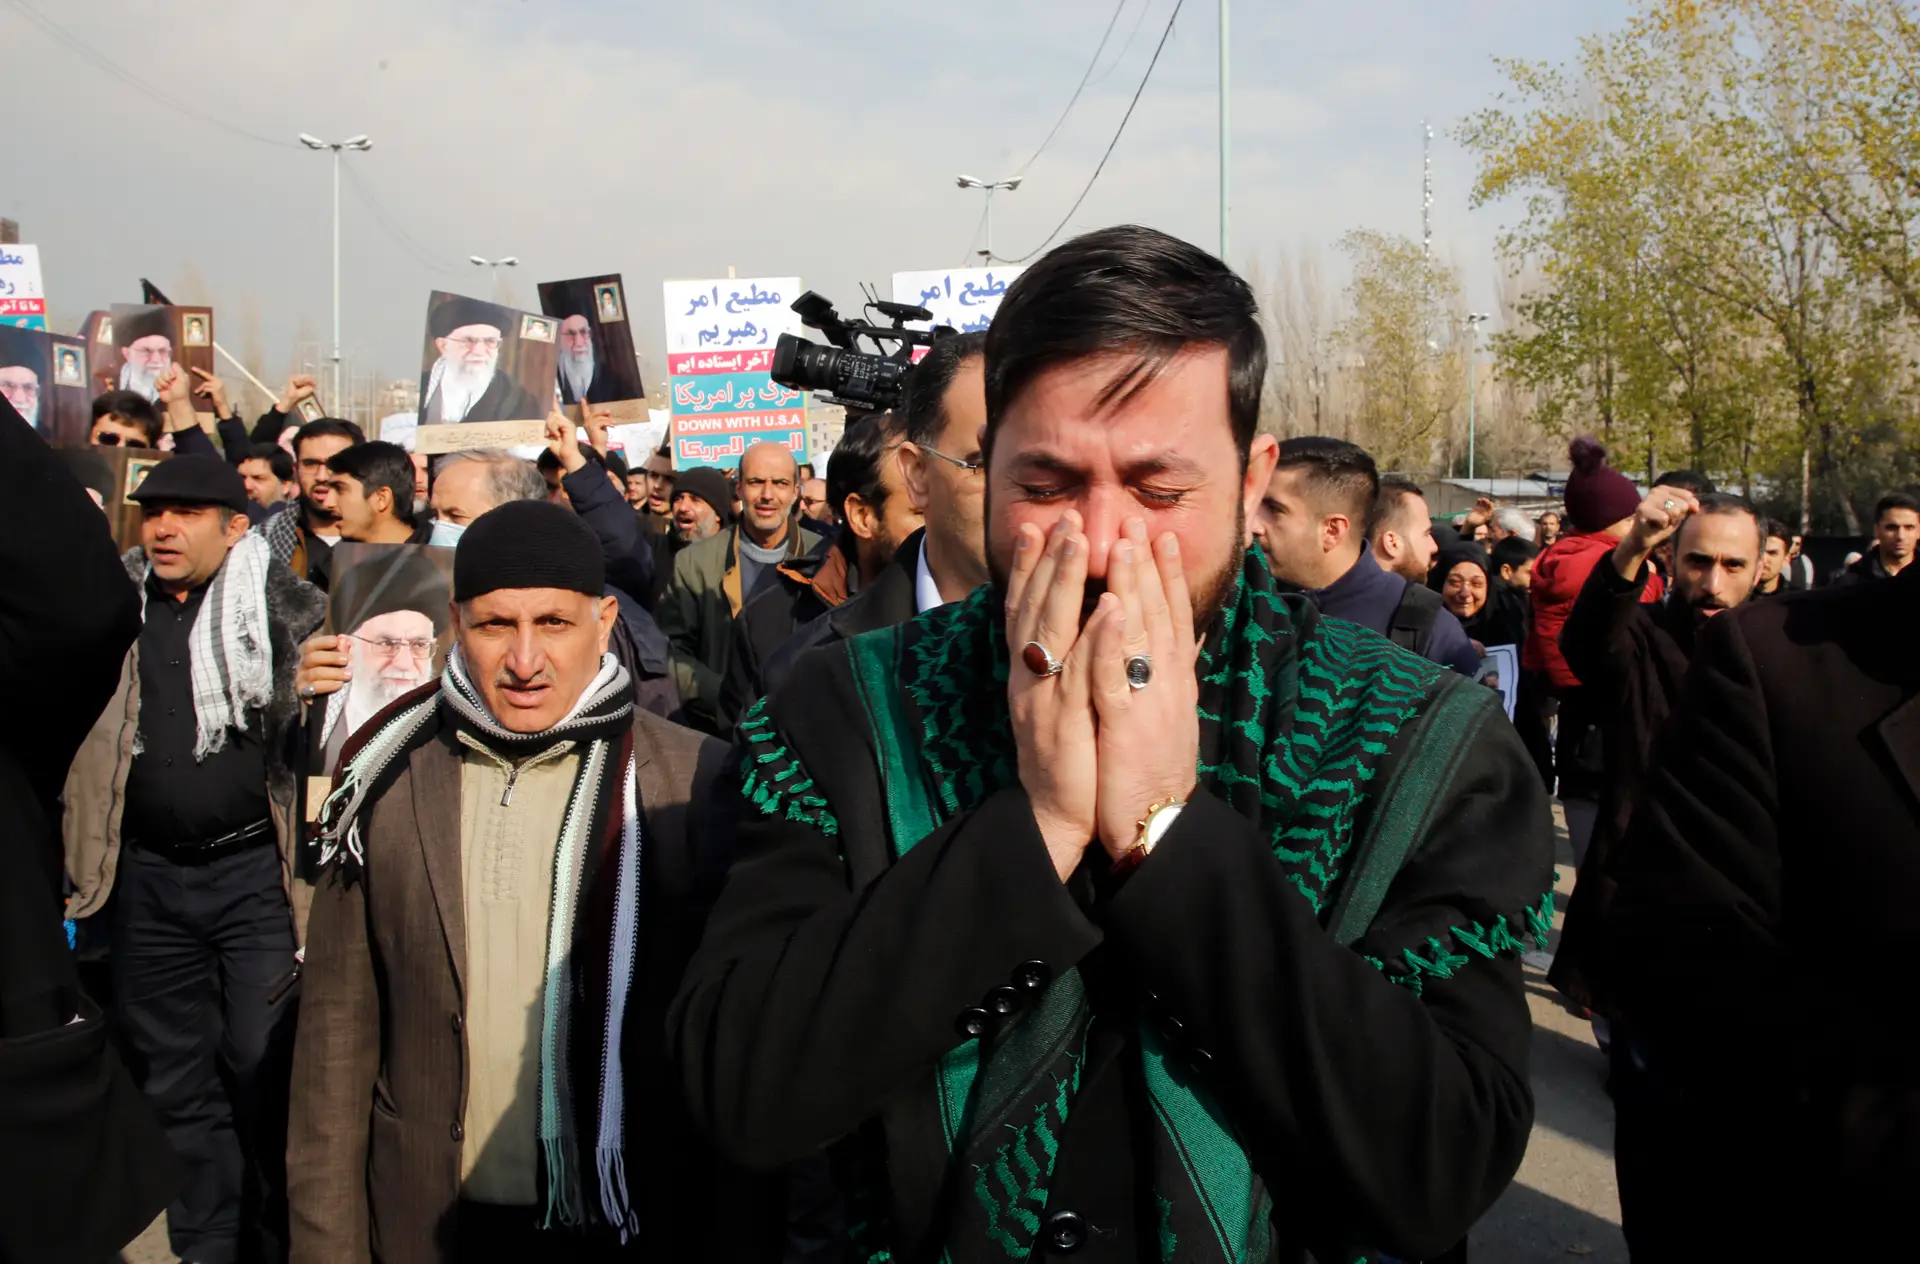 Milhares de pessoas choram a morte de Qassem Soleimani, tido como herói nacional desde a guerra Irão-Iraque na década de 1980